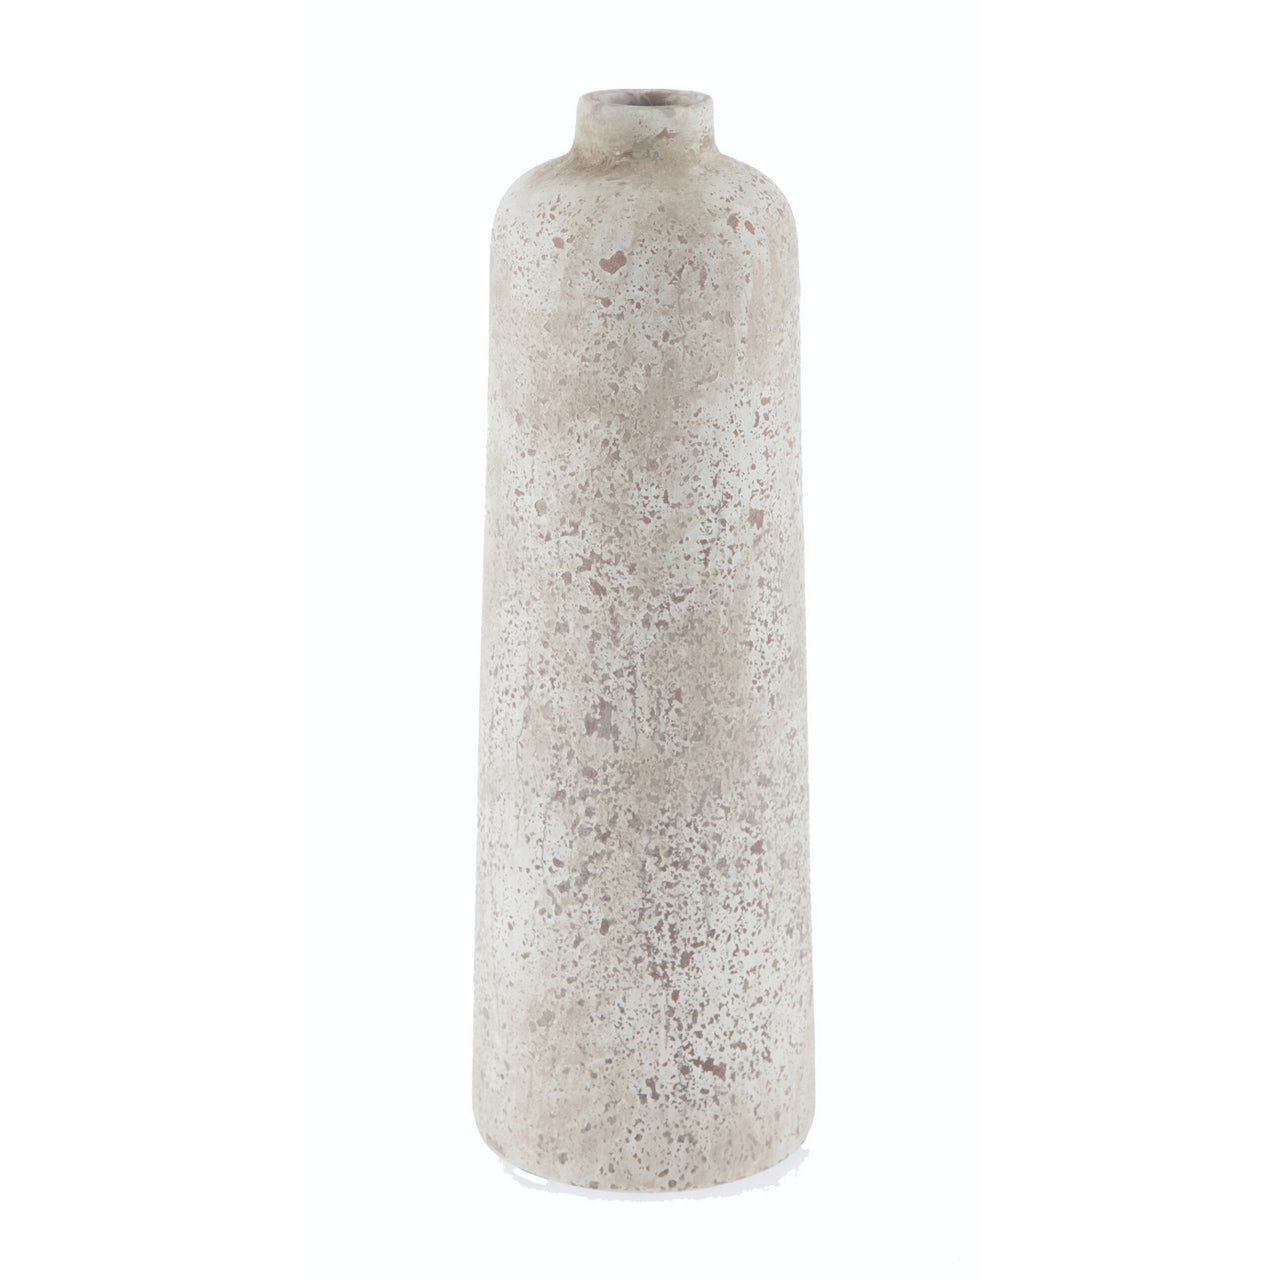 Tall Ceramic Bottle Vase - Small